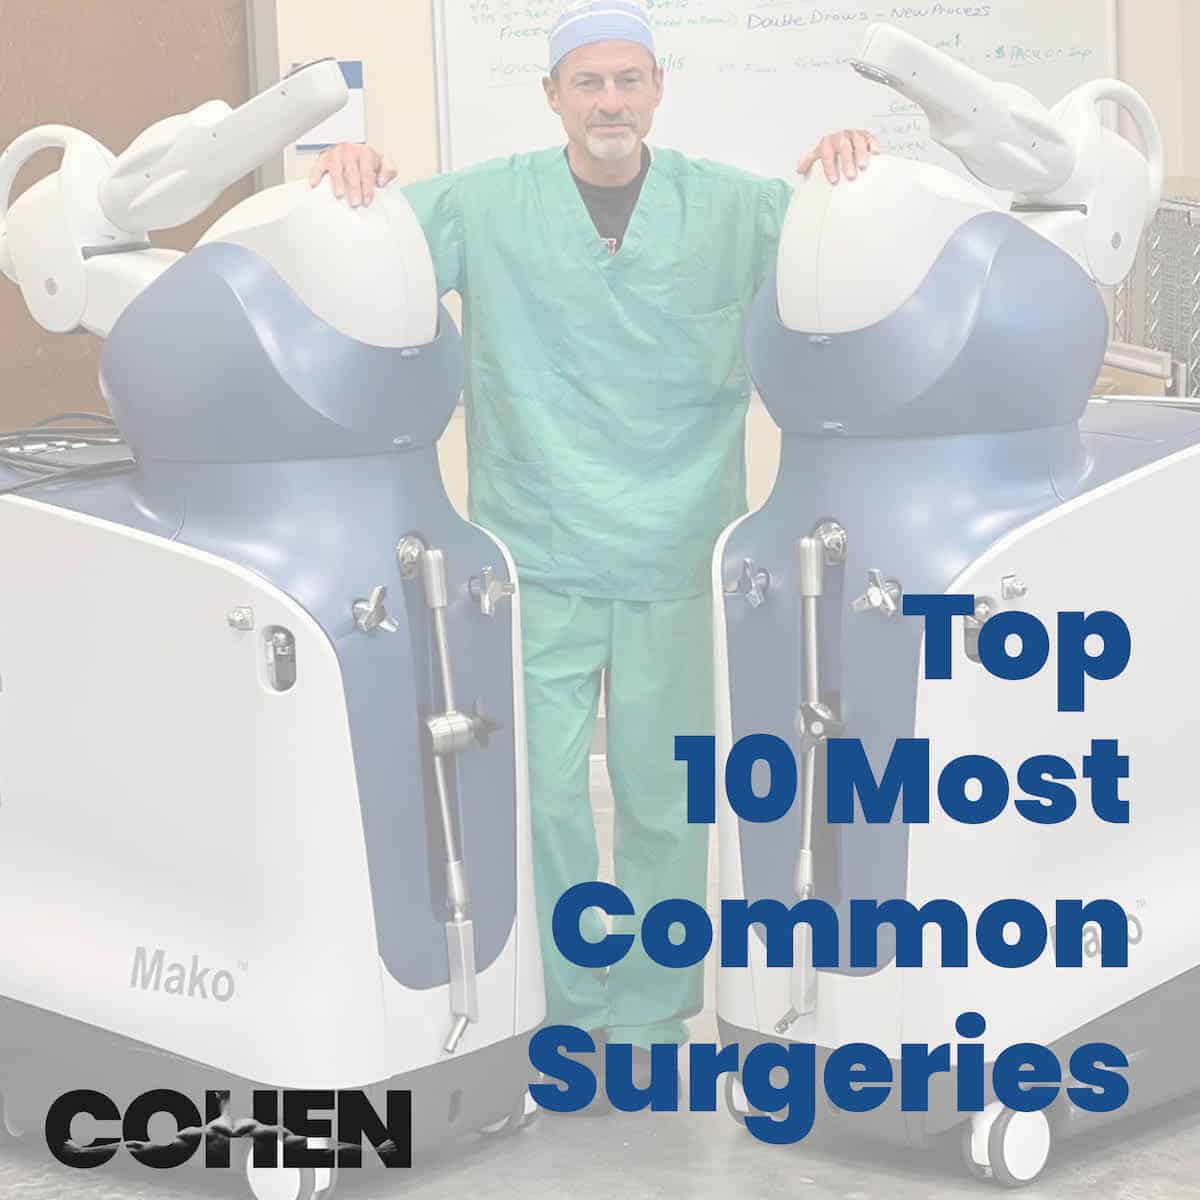 10 Most Common Surgeries